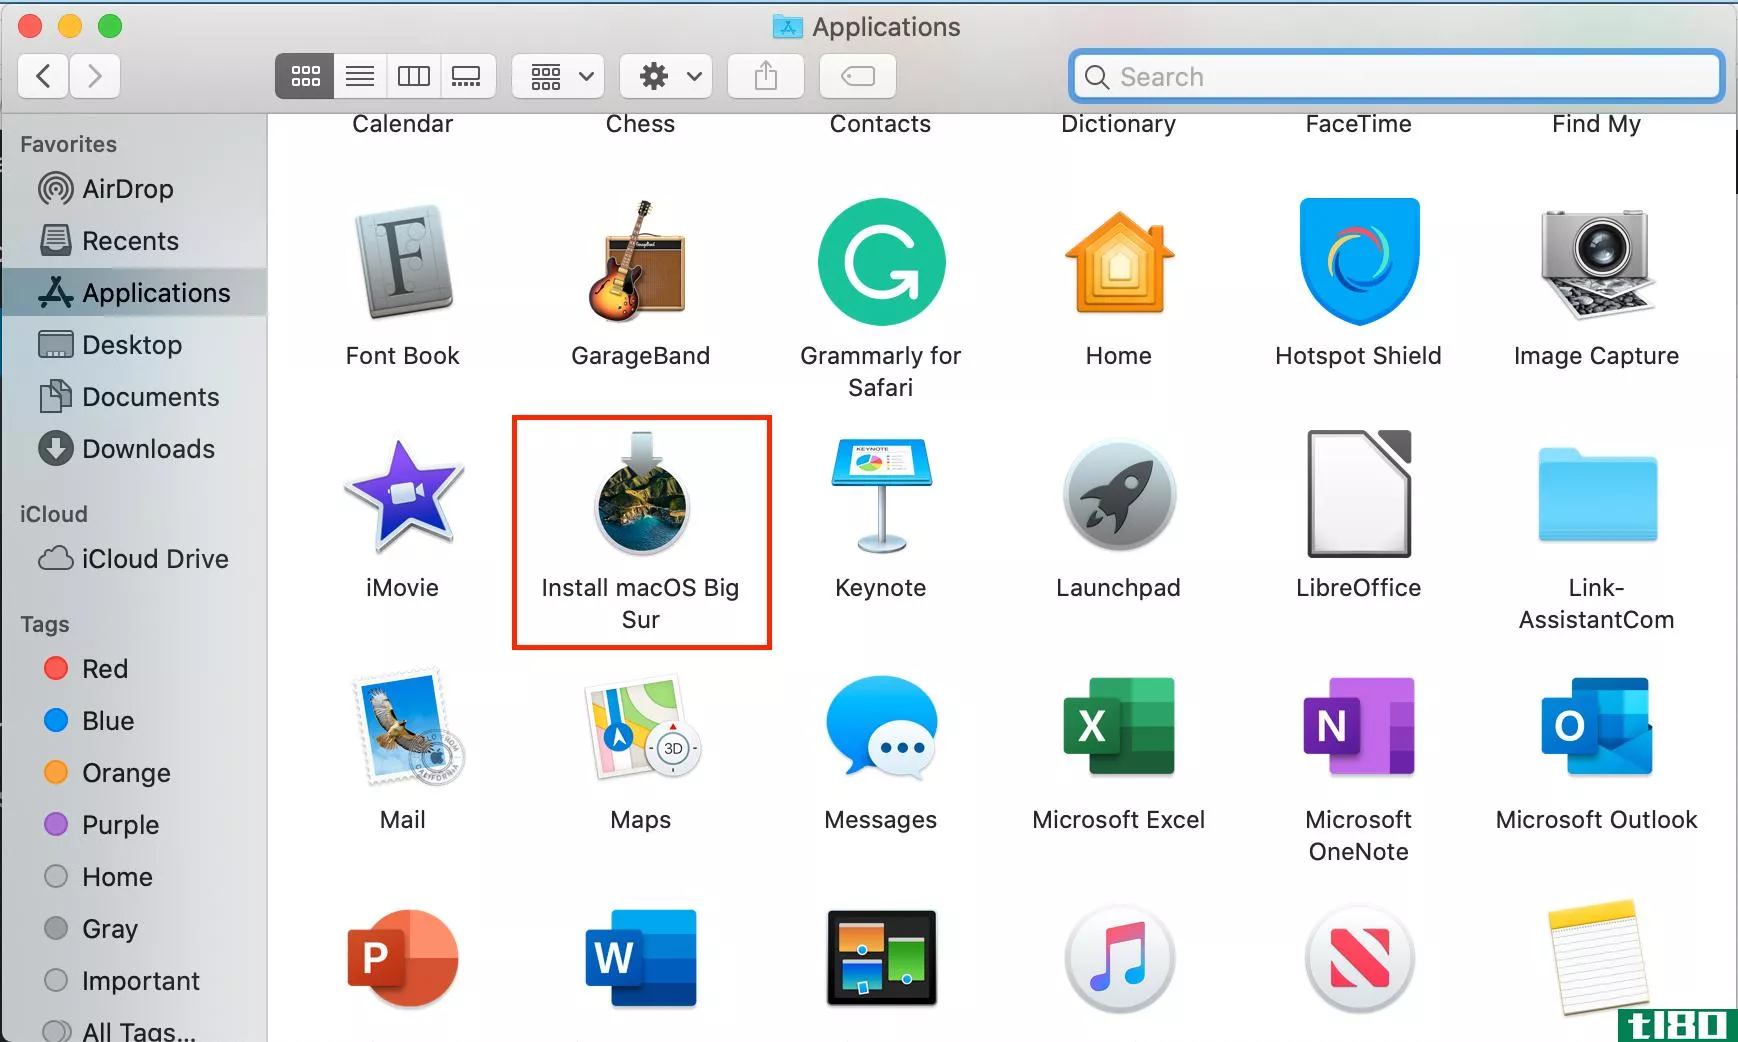 install macOS Big Sur app in the Applicati*** folder